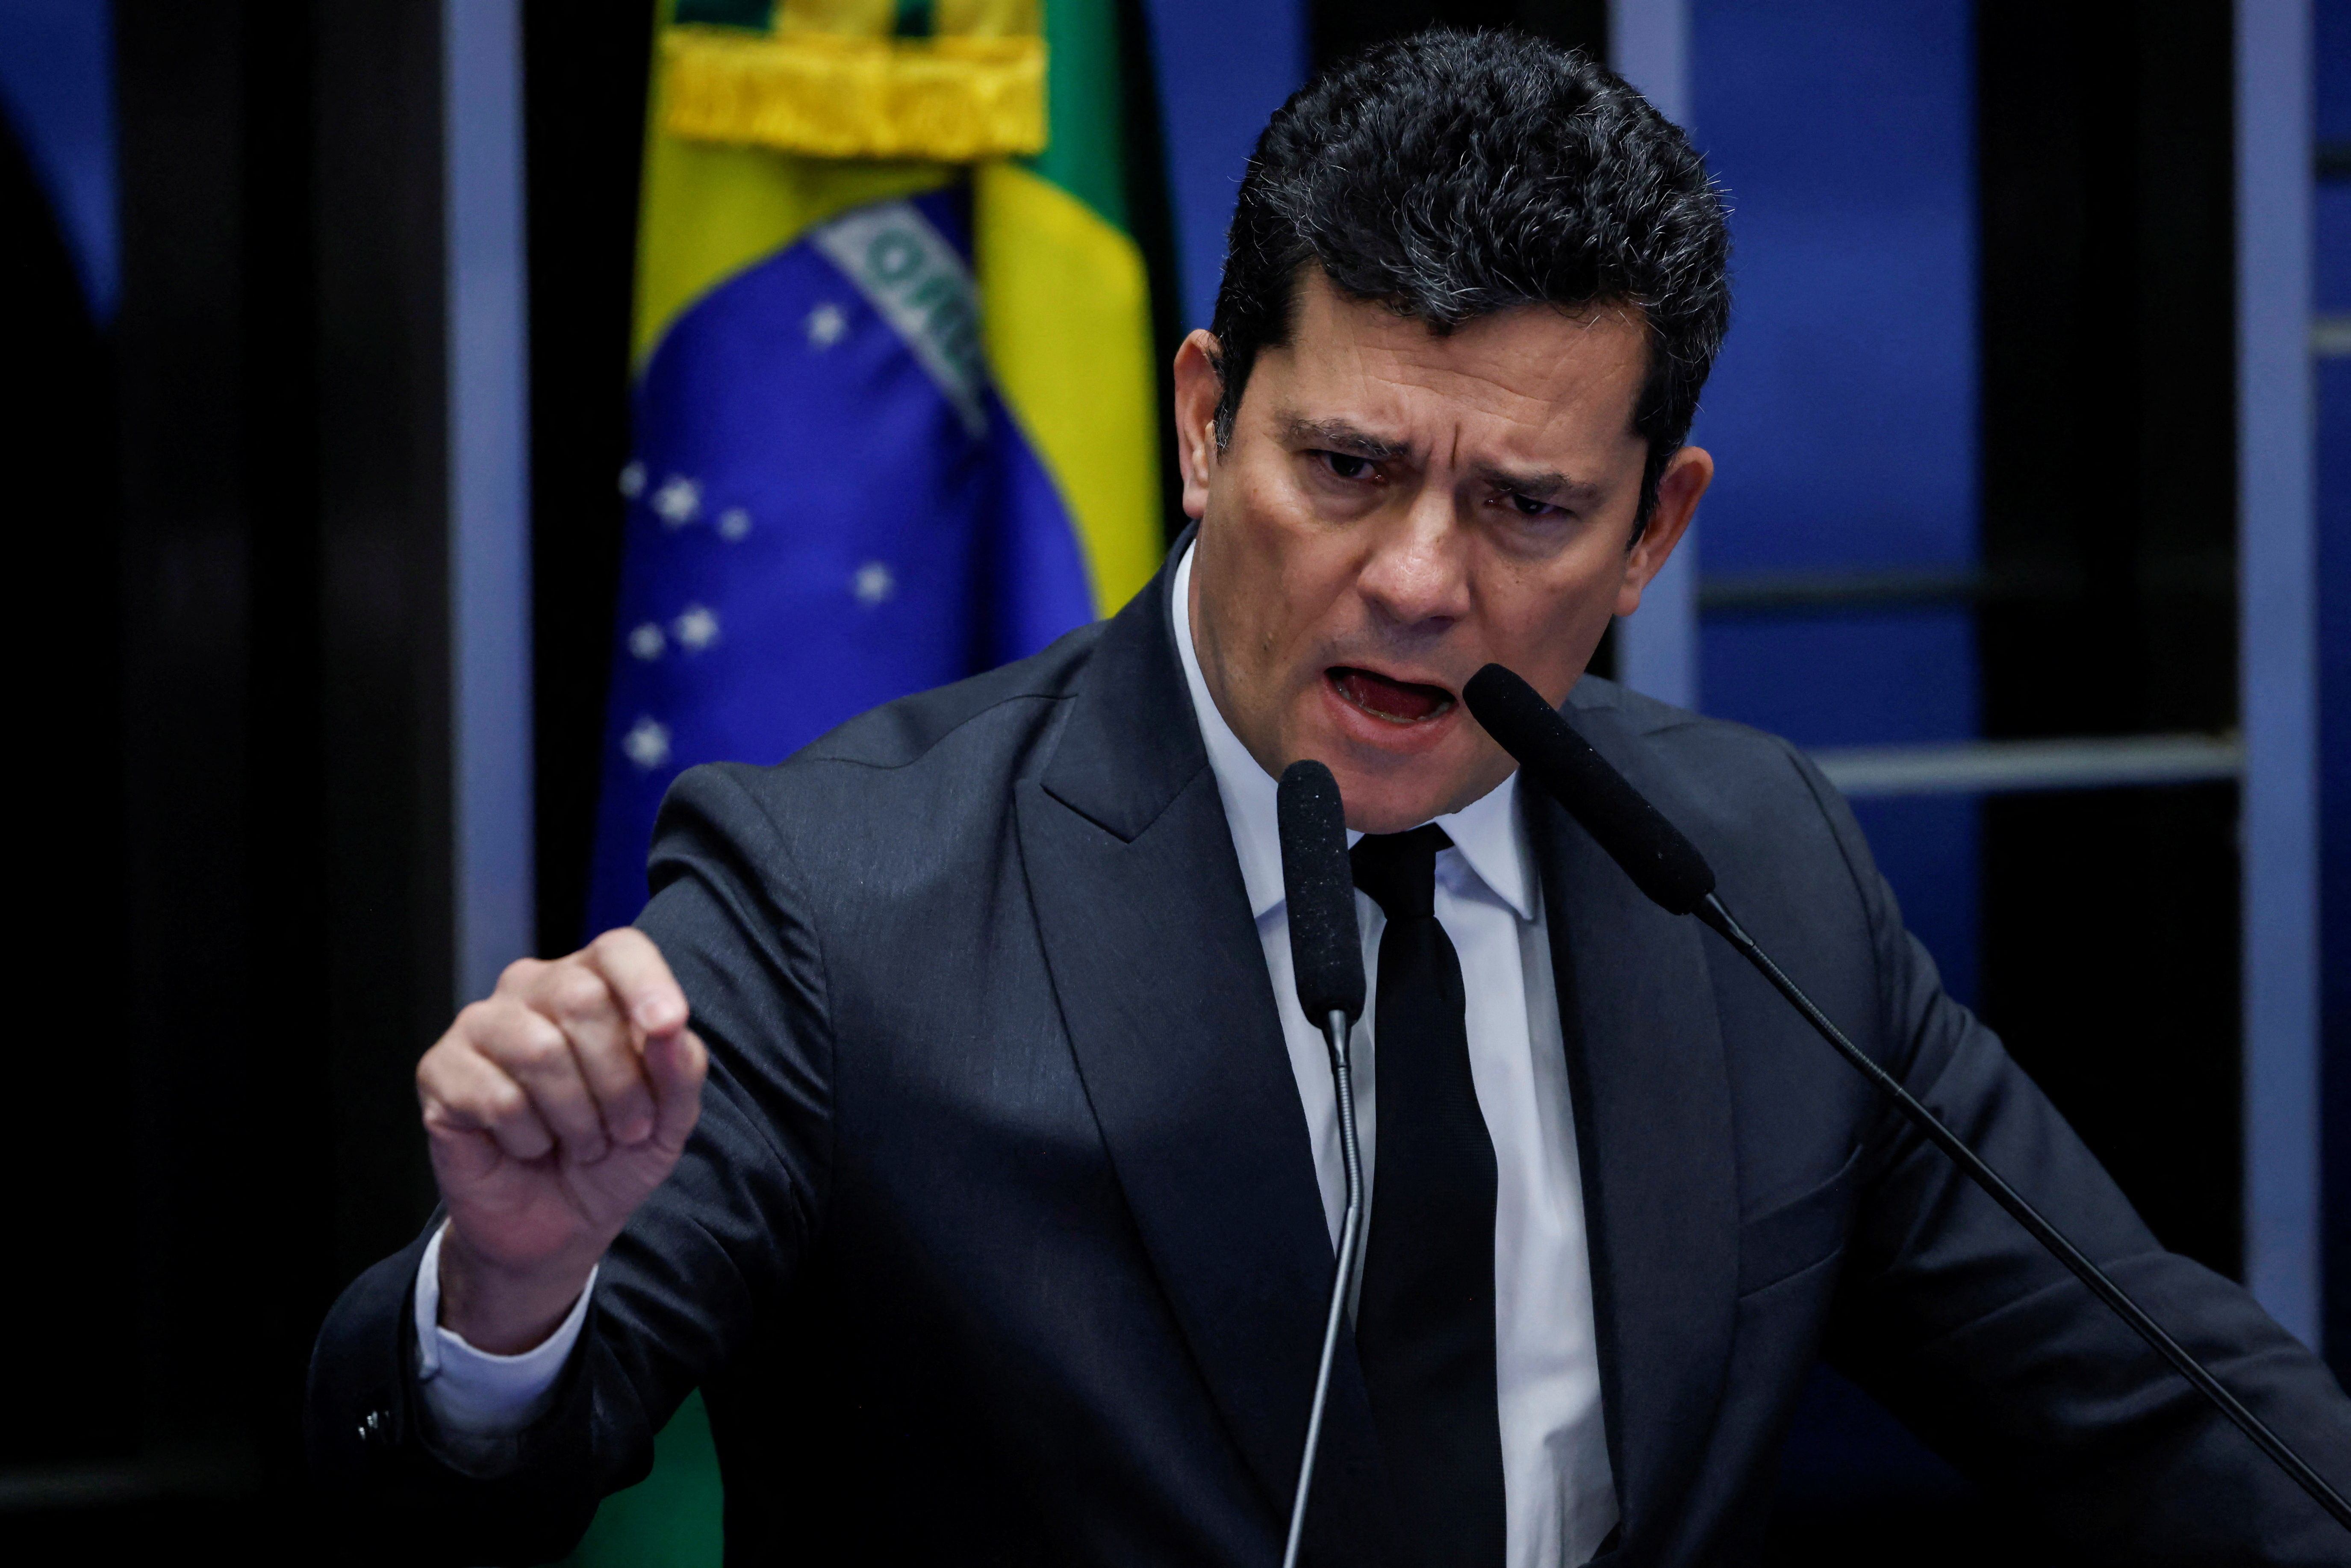 El senador Sergio Moro, del partido centrista Unión Brasil y que fue ministro de Bolsonaro y el juez que mandó a Lula a prisión por corrupción. (REUTERS/Adriano Machado)